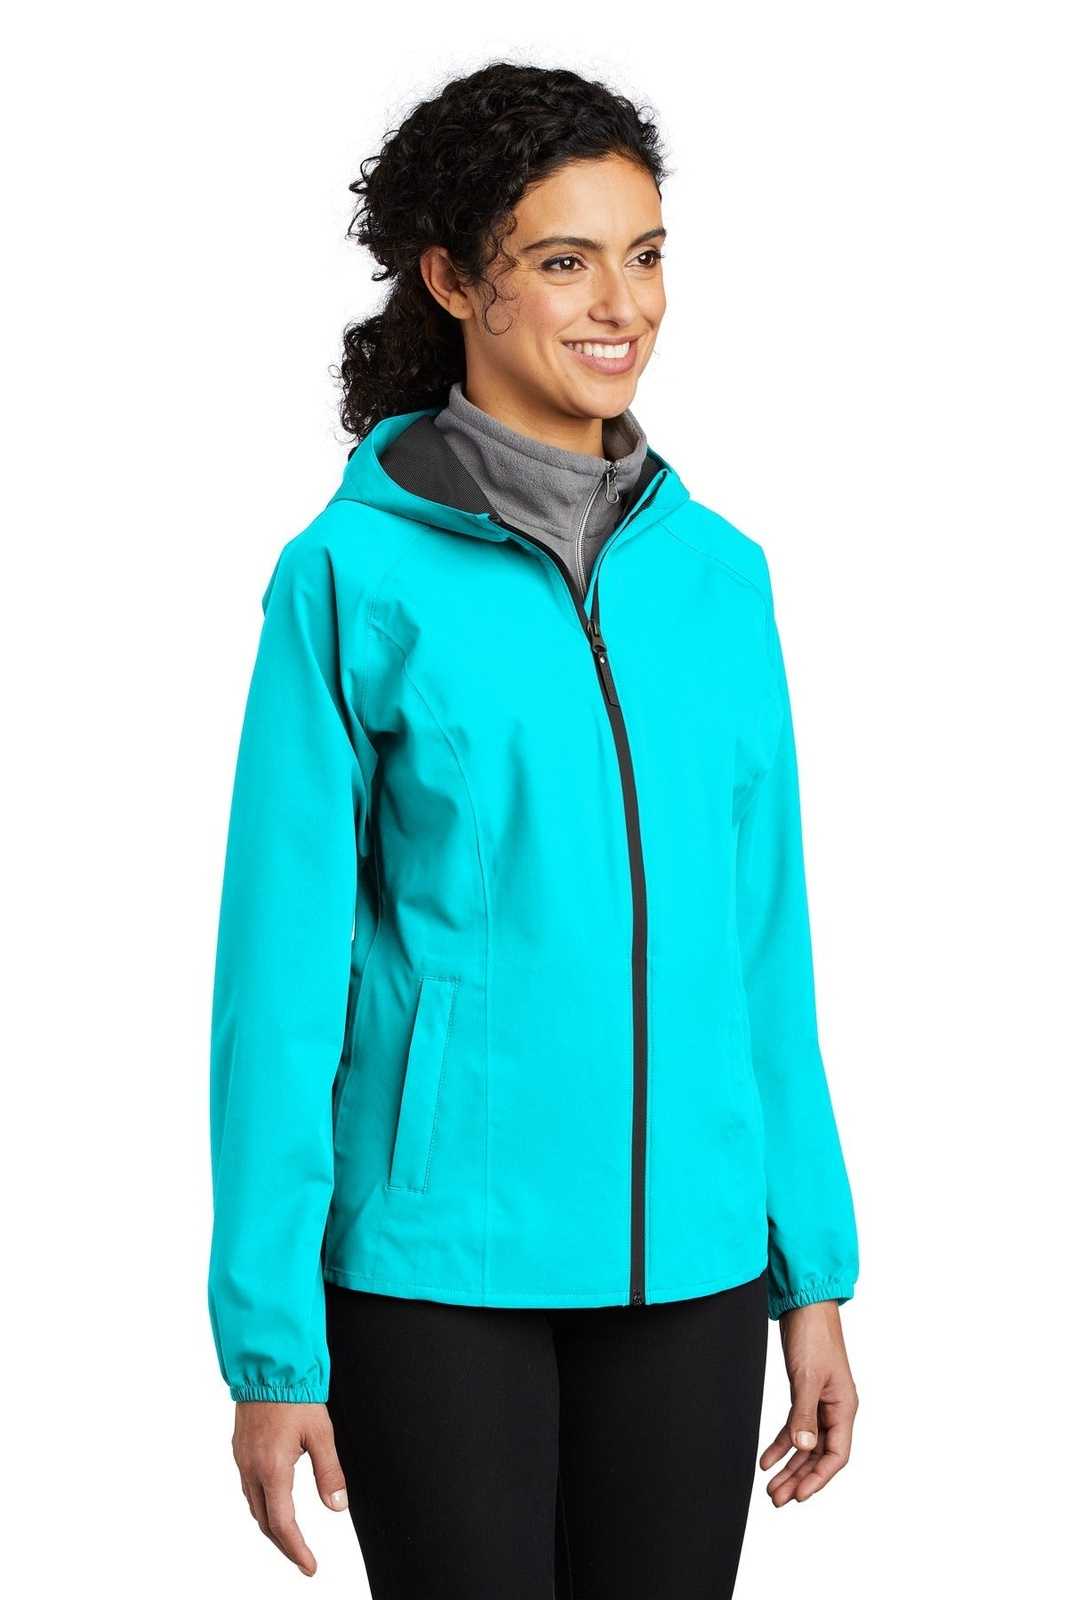 Port Authority L407 Ladies Essential Rain Jacket - Light Cyan Blue - HIT a Double - 4